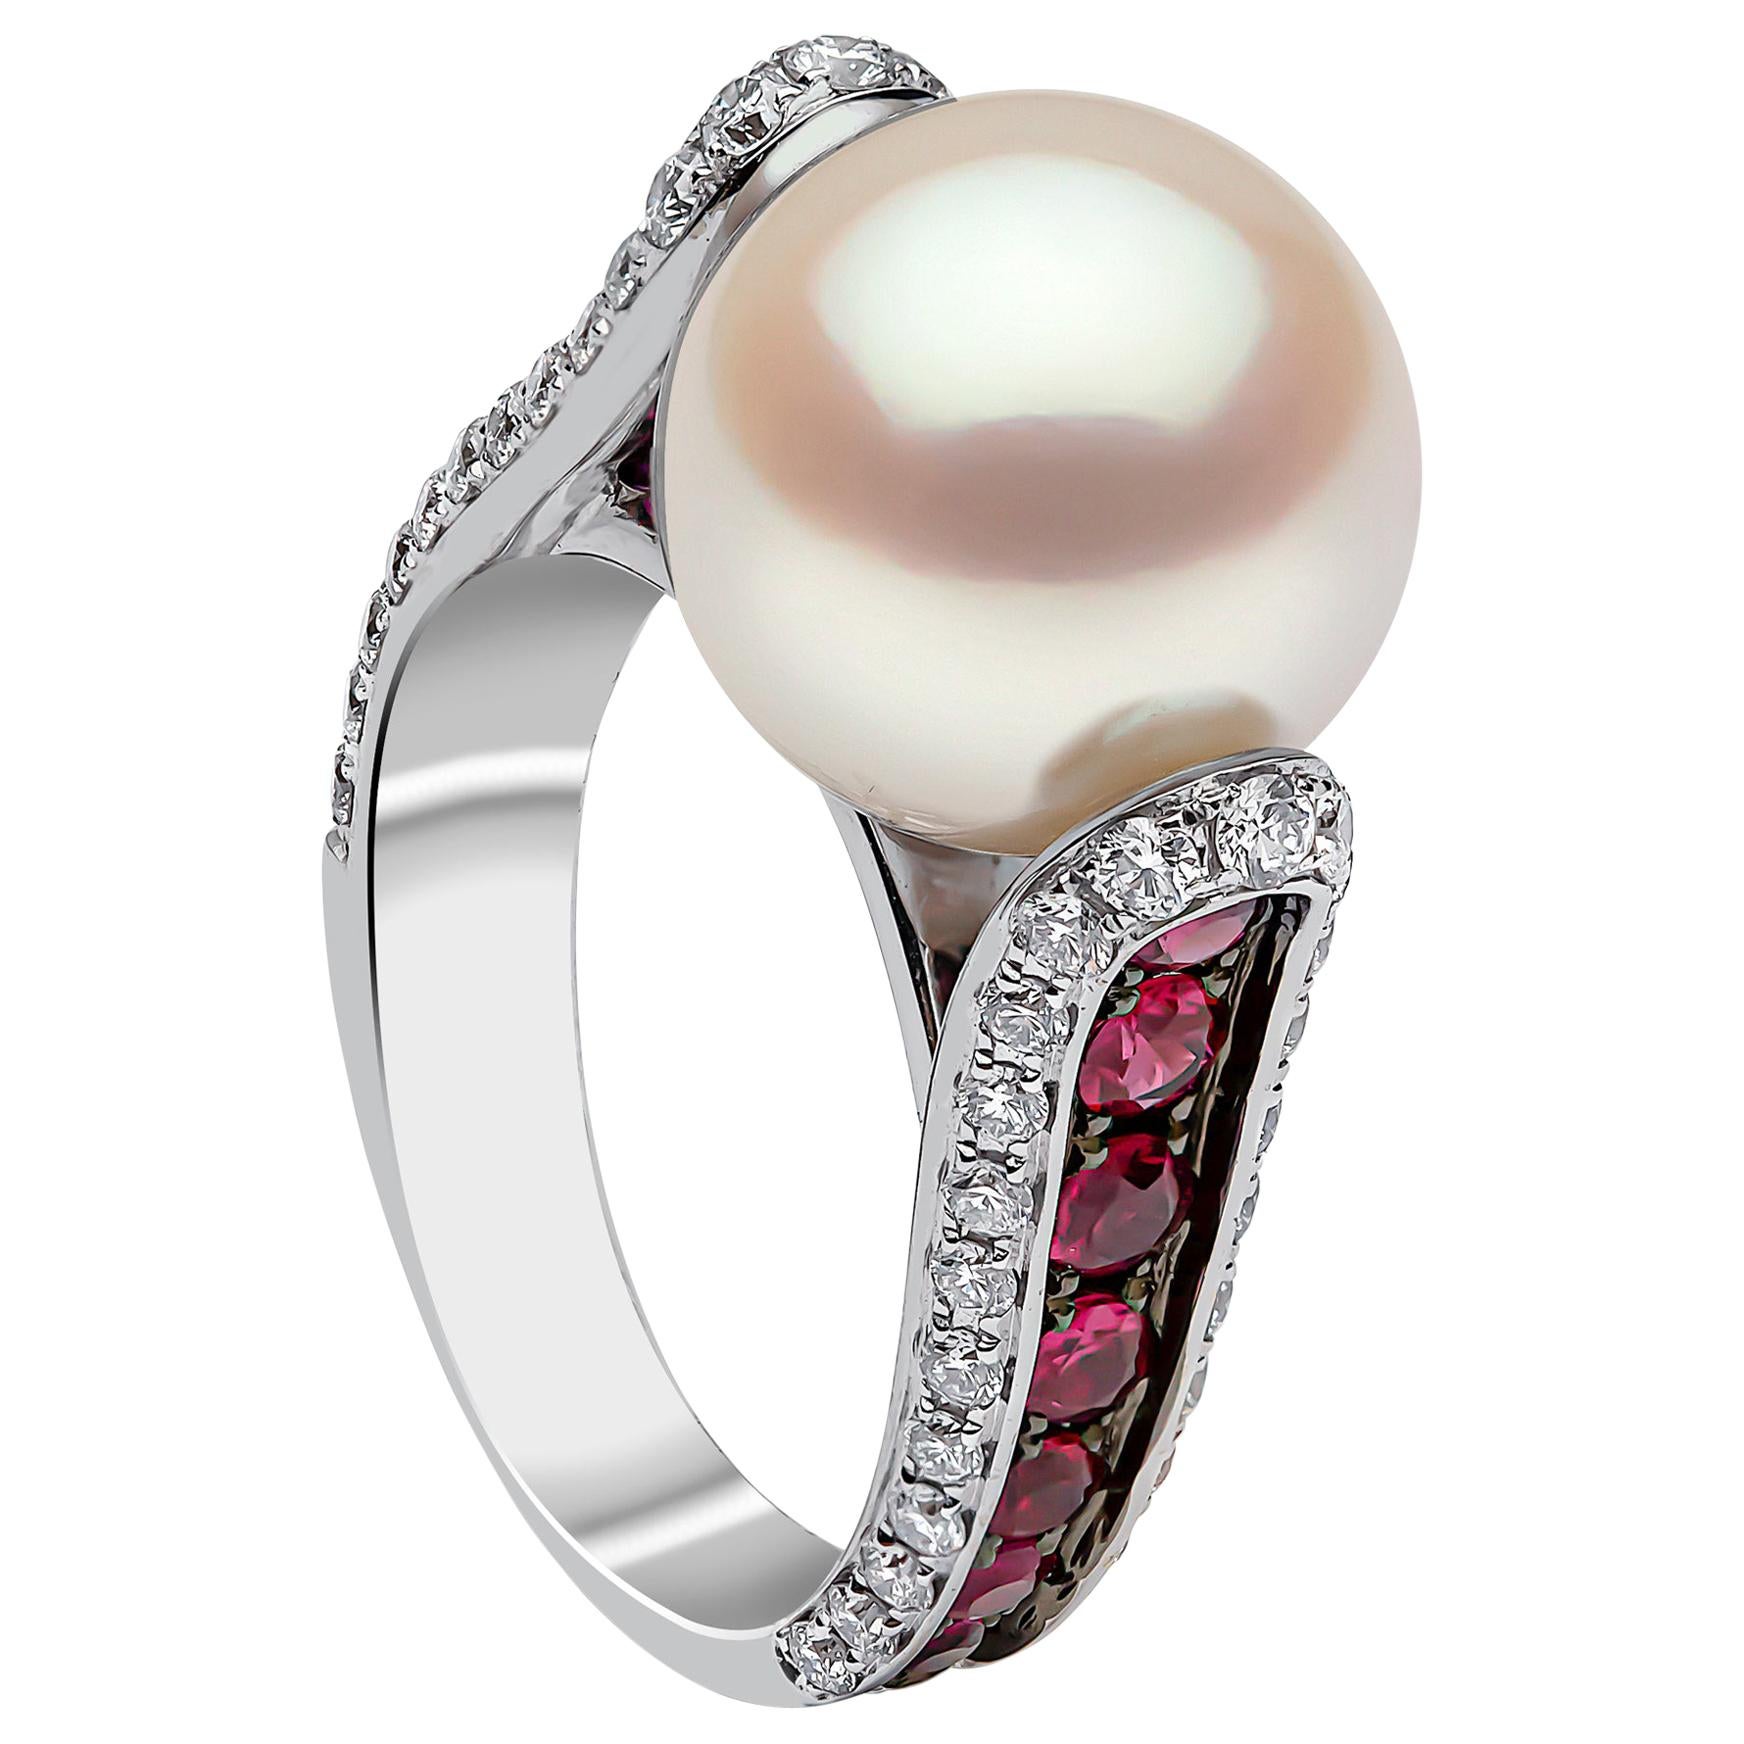 Bague Yoko London en or blanc 18 carats, perles des mers du Sud, rubis et diamants